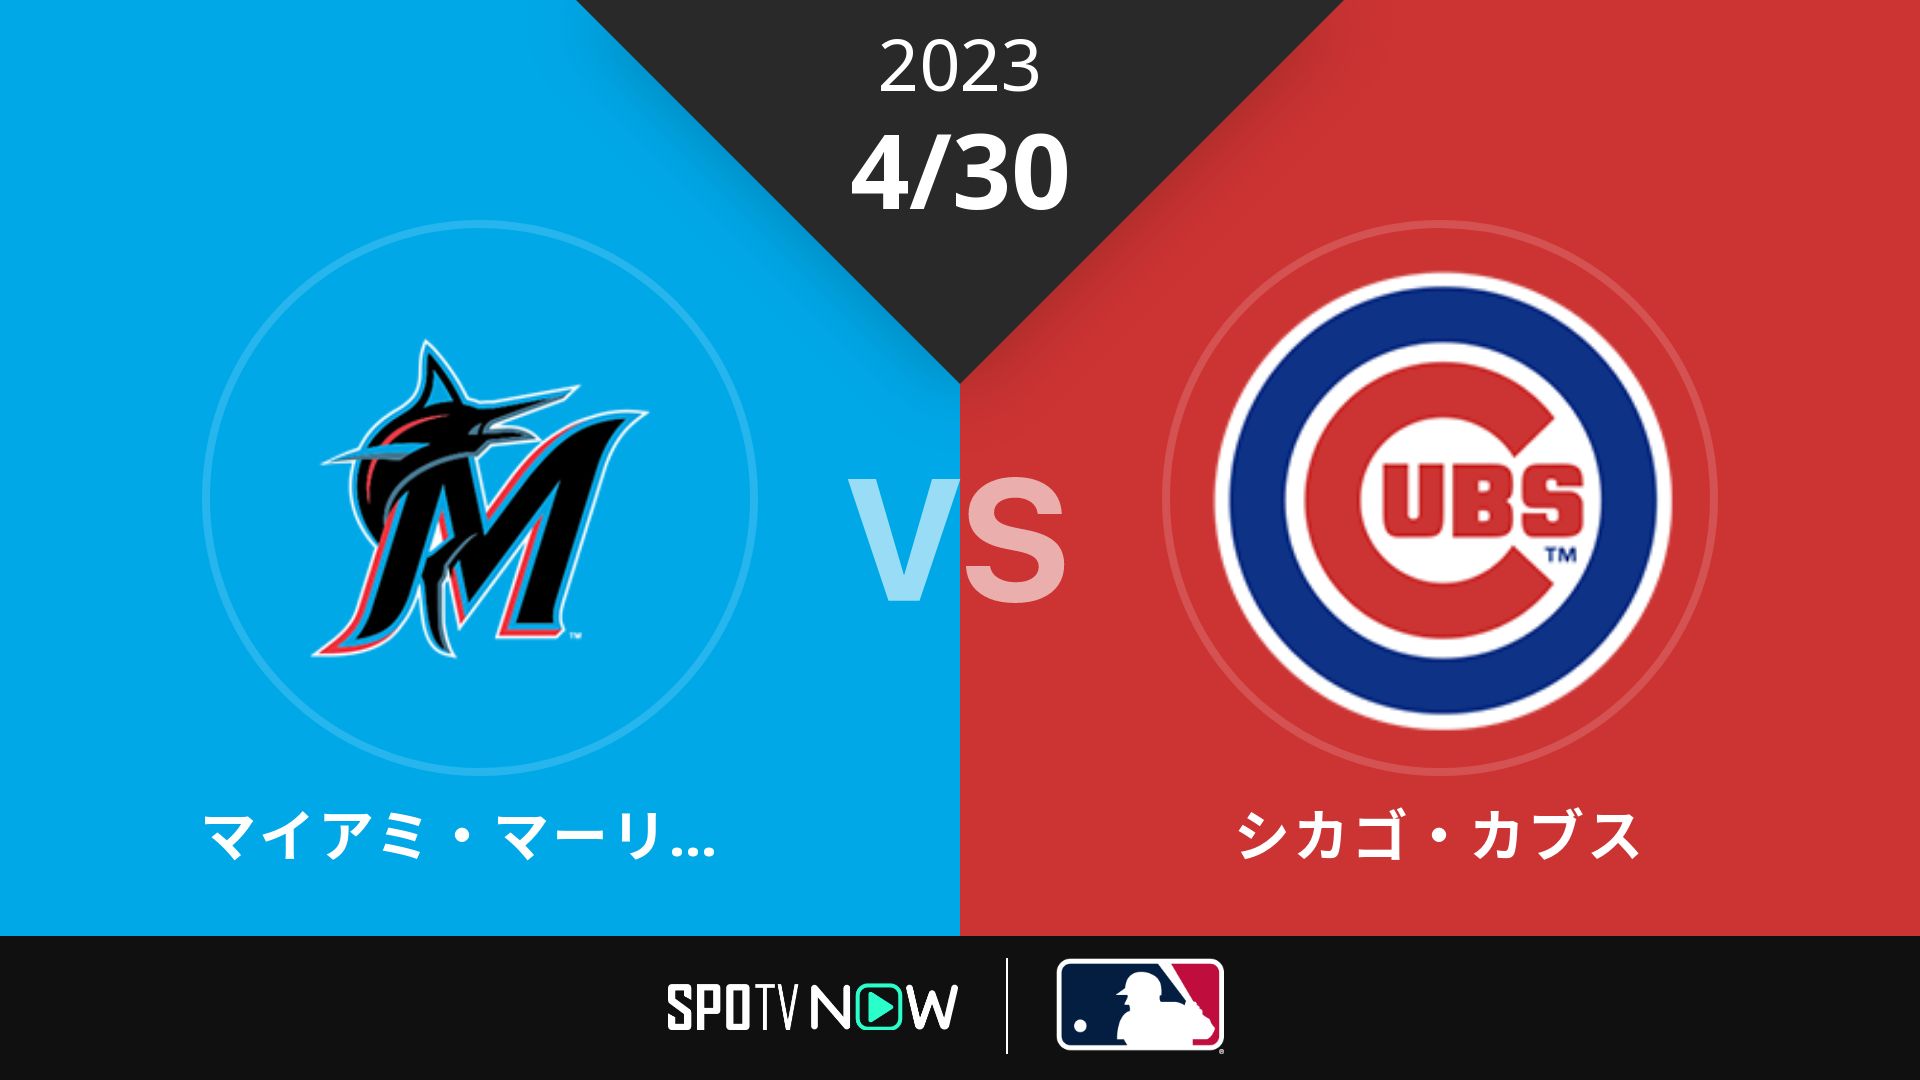 2023/4/30 マーリンズ vs カブス [MLB]